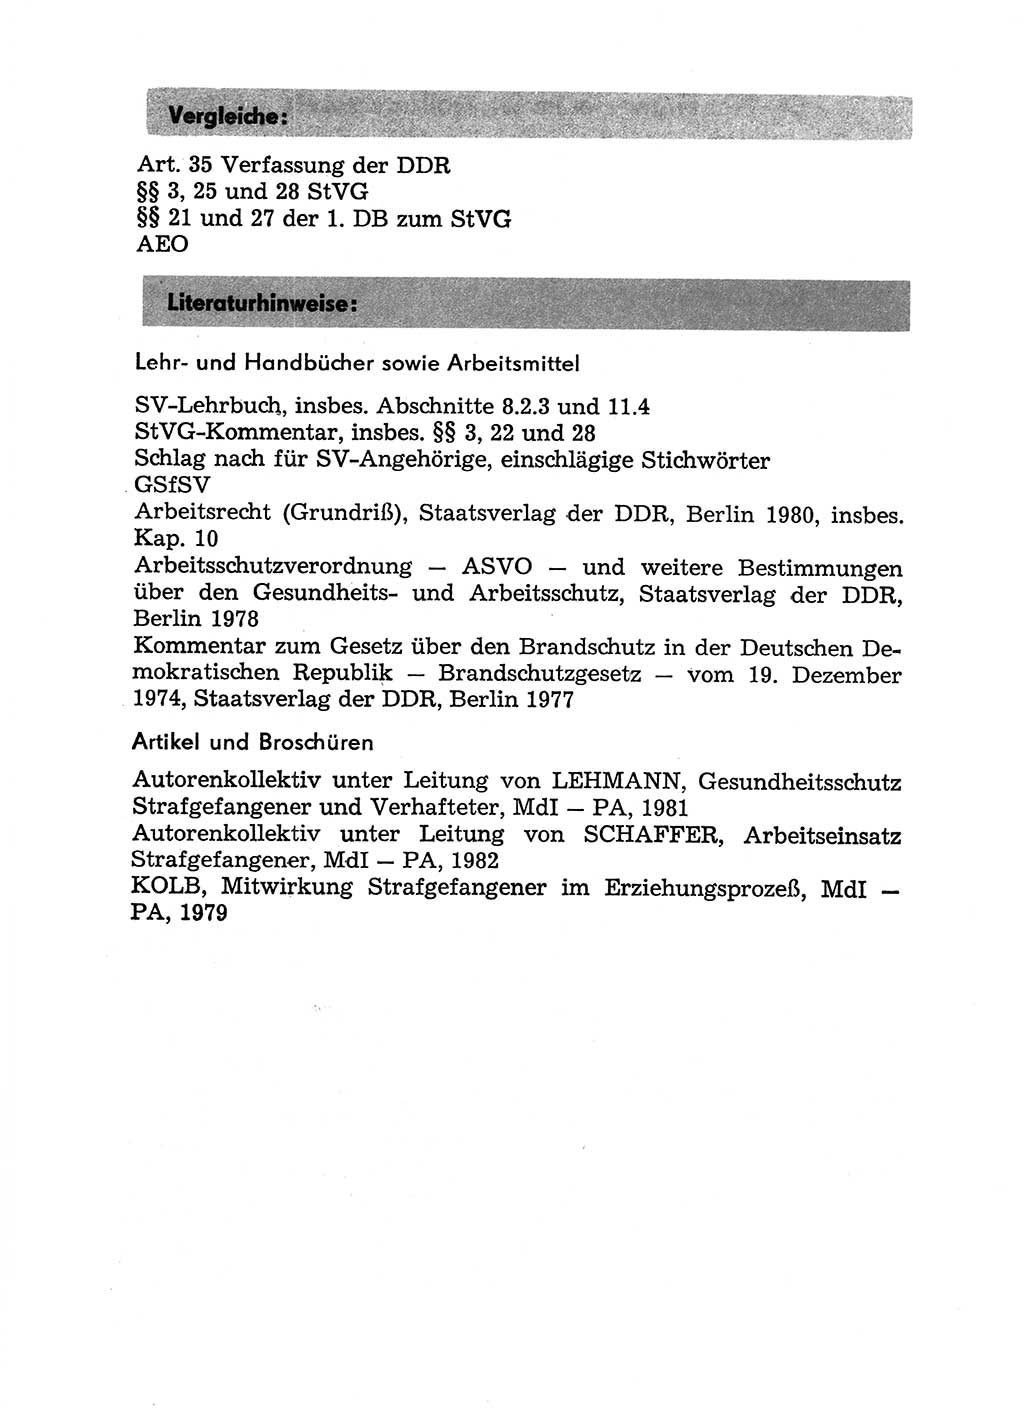 Handbuch für Betriebsangehörige, Abteilung Strafvollzug (SV) [Ministerium des Innern (MdI) Deutsche Demokratische Republik (DDR)] 1981, Seite 77 (Hb. BA Abt. SV MdI DDR 1981, S. 77)